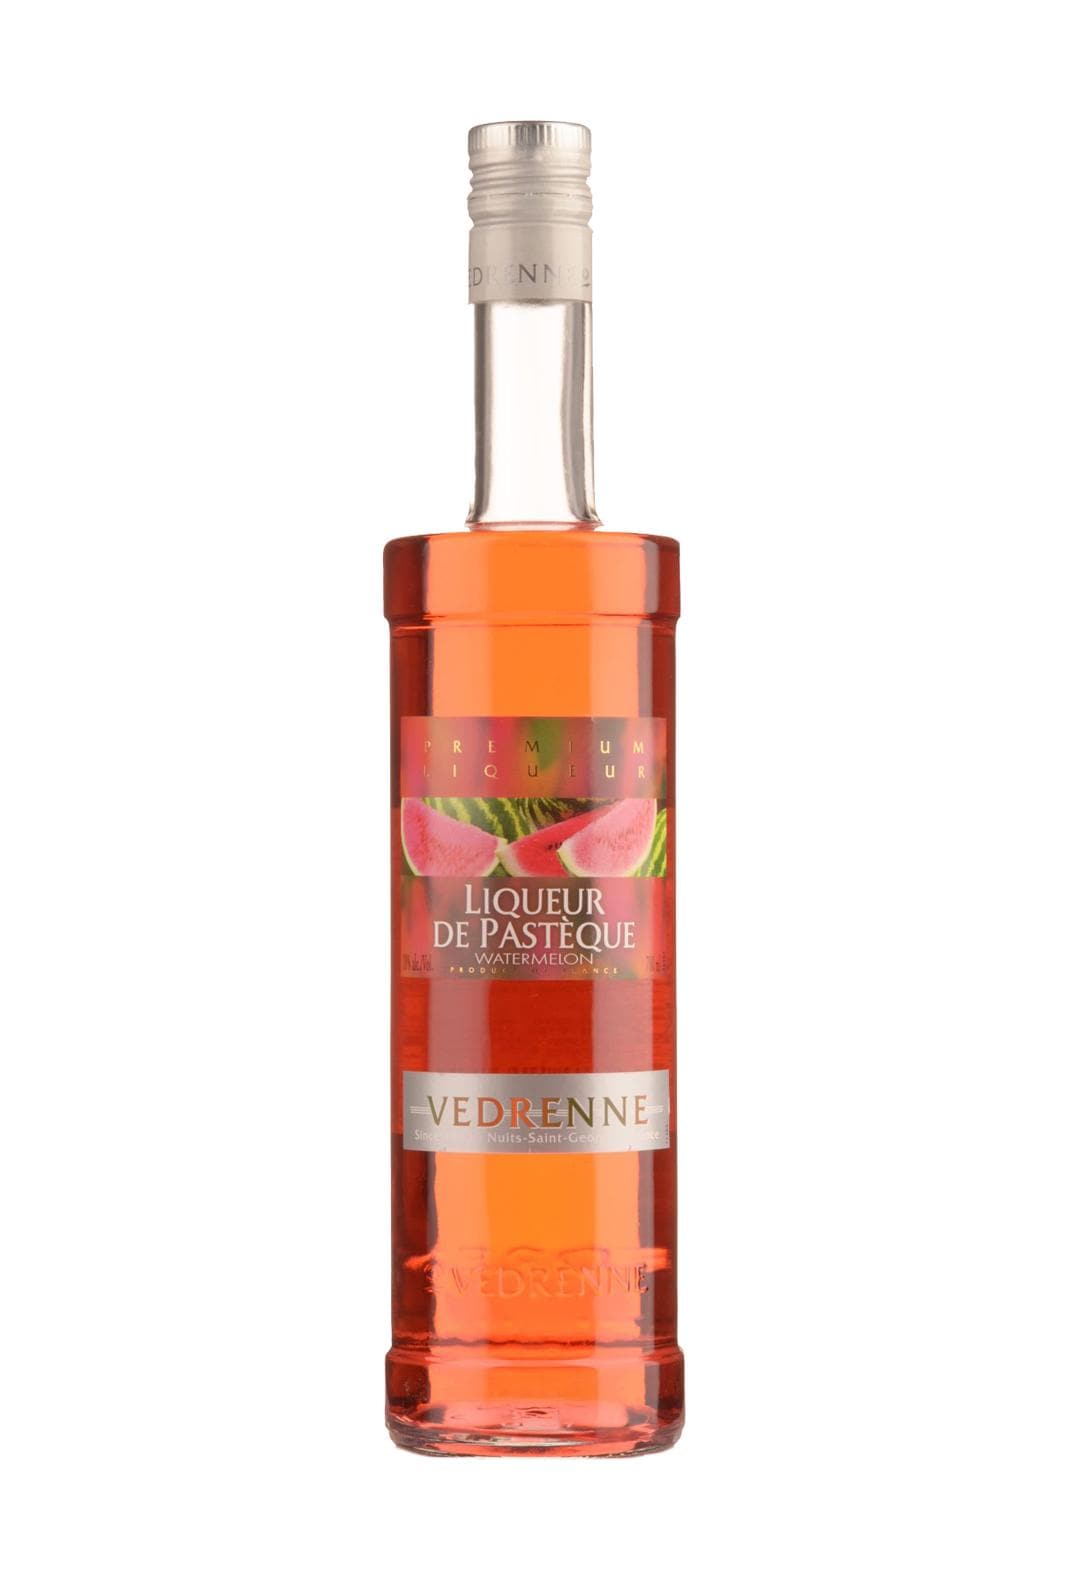 Vedrenne Liqueur de Pasteque (Watermelon) 18% 700ml | Liqueurs | Shop online at Spirits of France